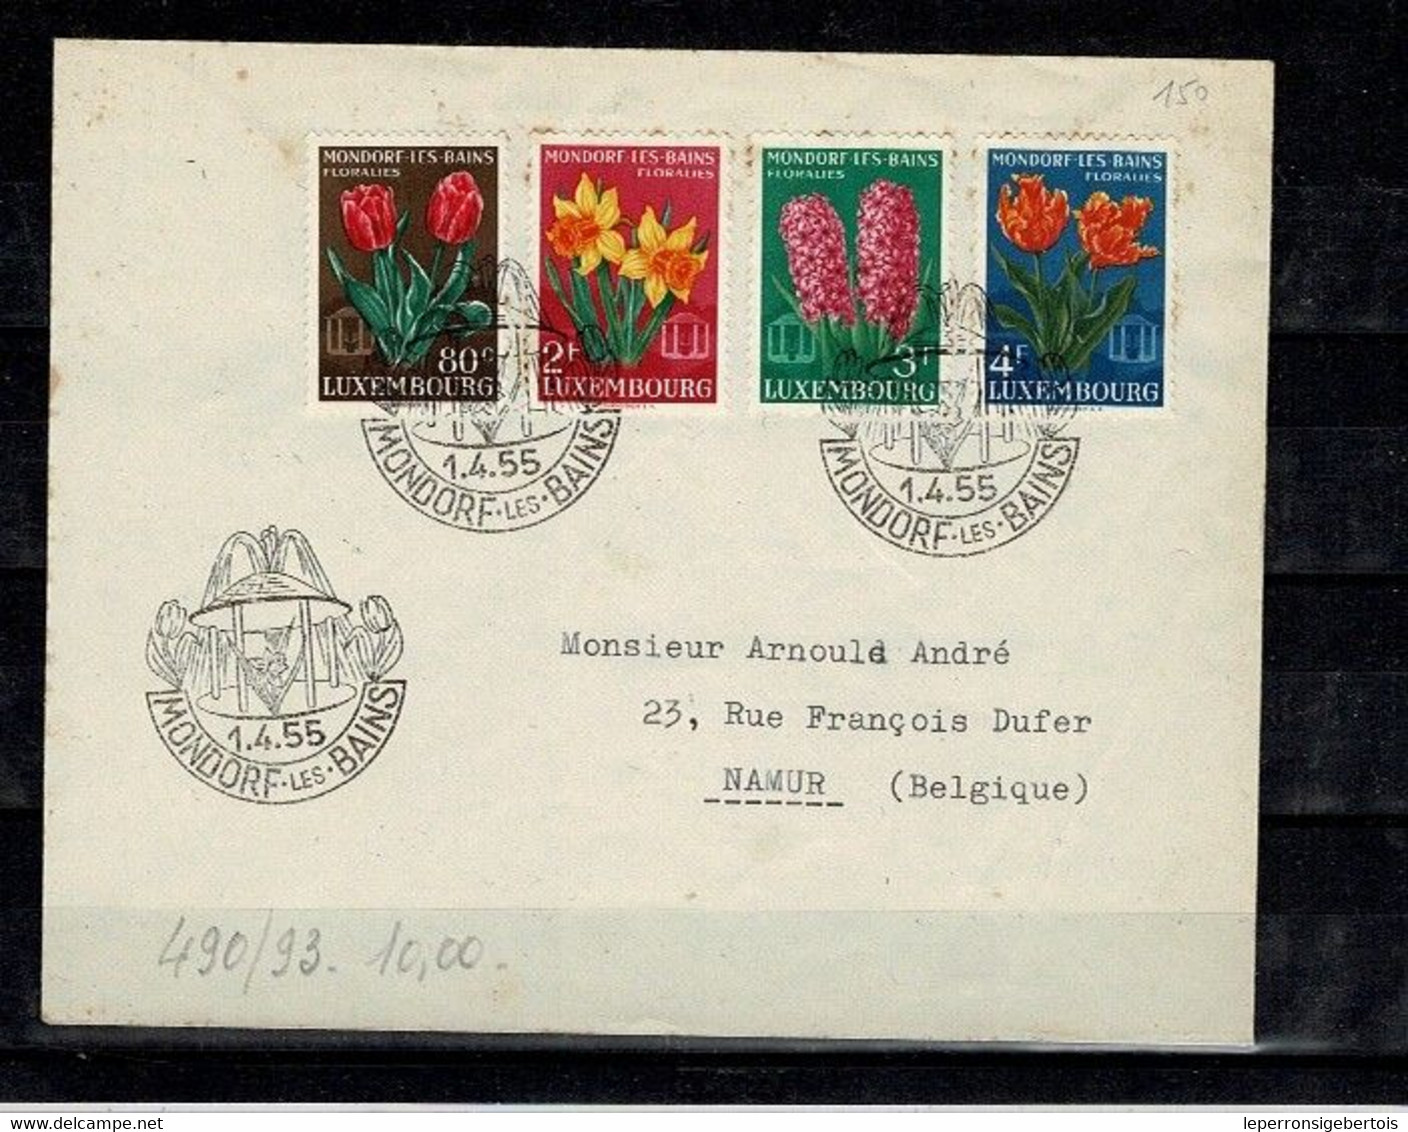 Luxembourg - 1955 Luxembourg Vers Namur - Timbres 490 à 493 Mondorf Les Bains Floralies - Oblitération 1er Jour - - Briefe U. Dokumente